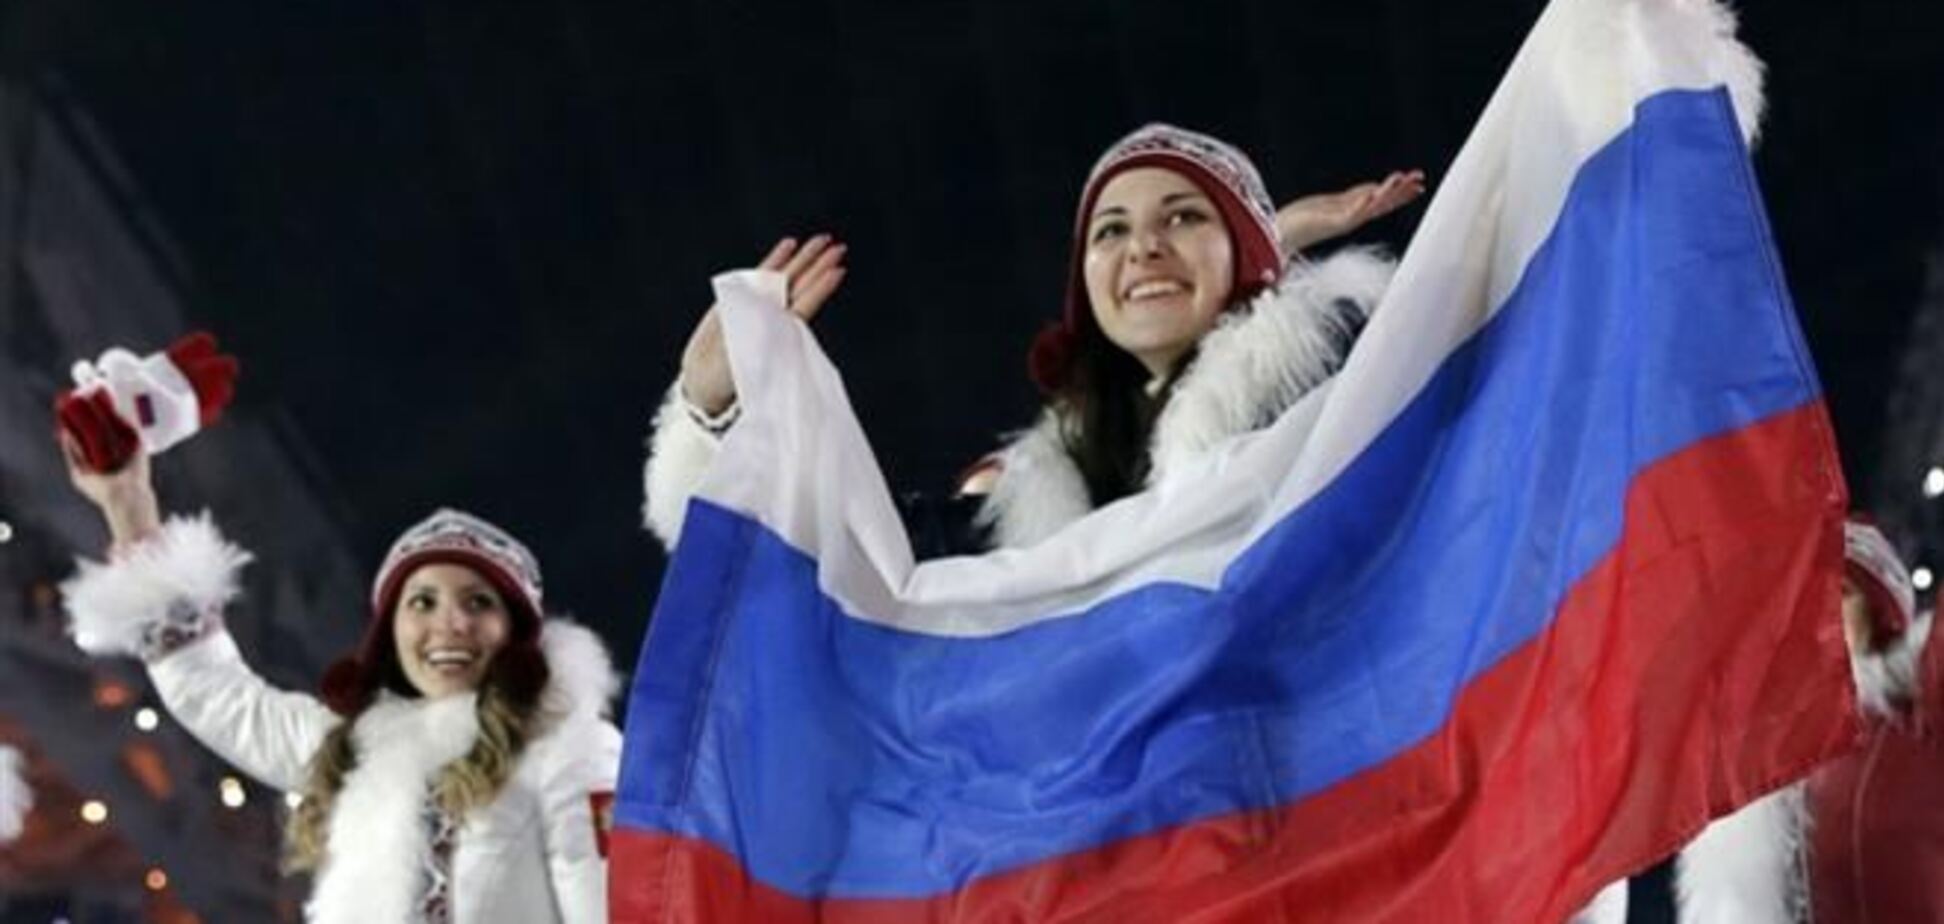  Церемония открытия зимних Олимпийских игр в Сочи 